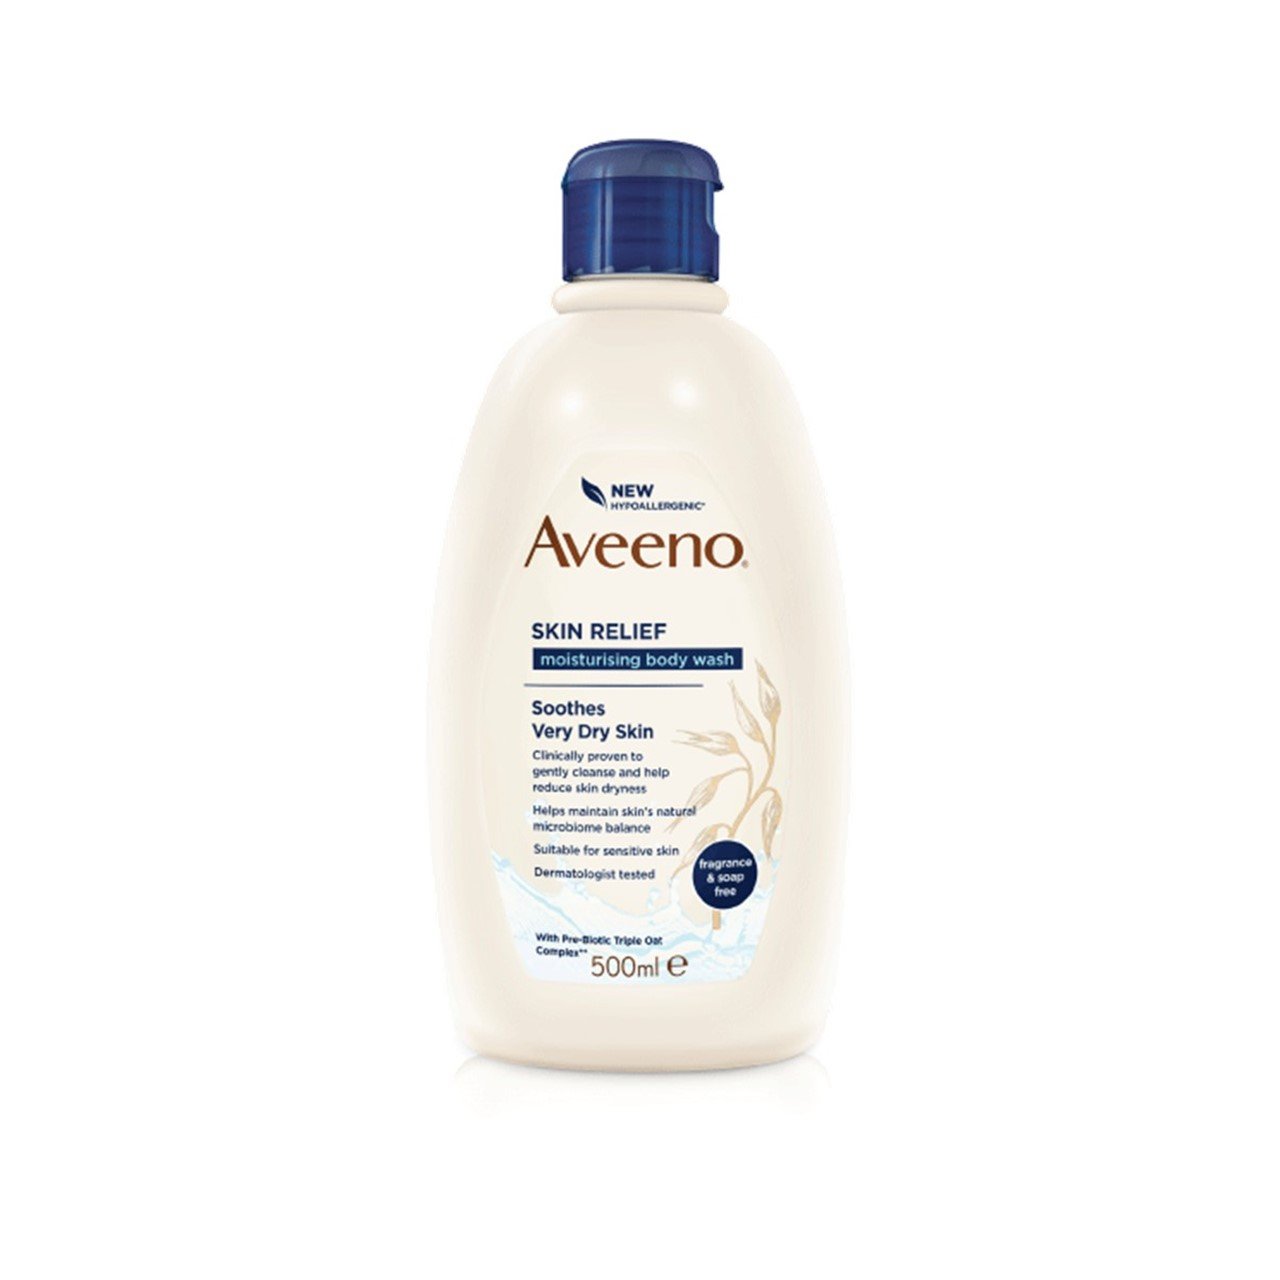 Aveeno Skin Relief Moisturizing Body Wash 500ml (16.91fl oz)